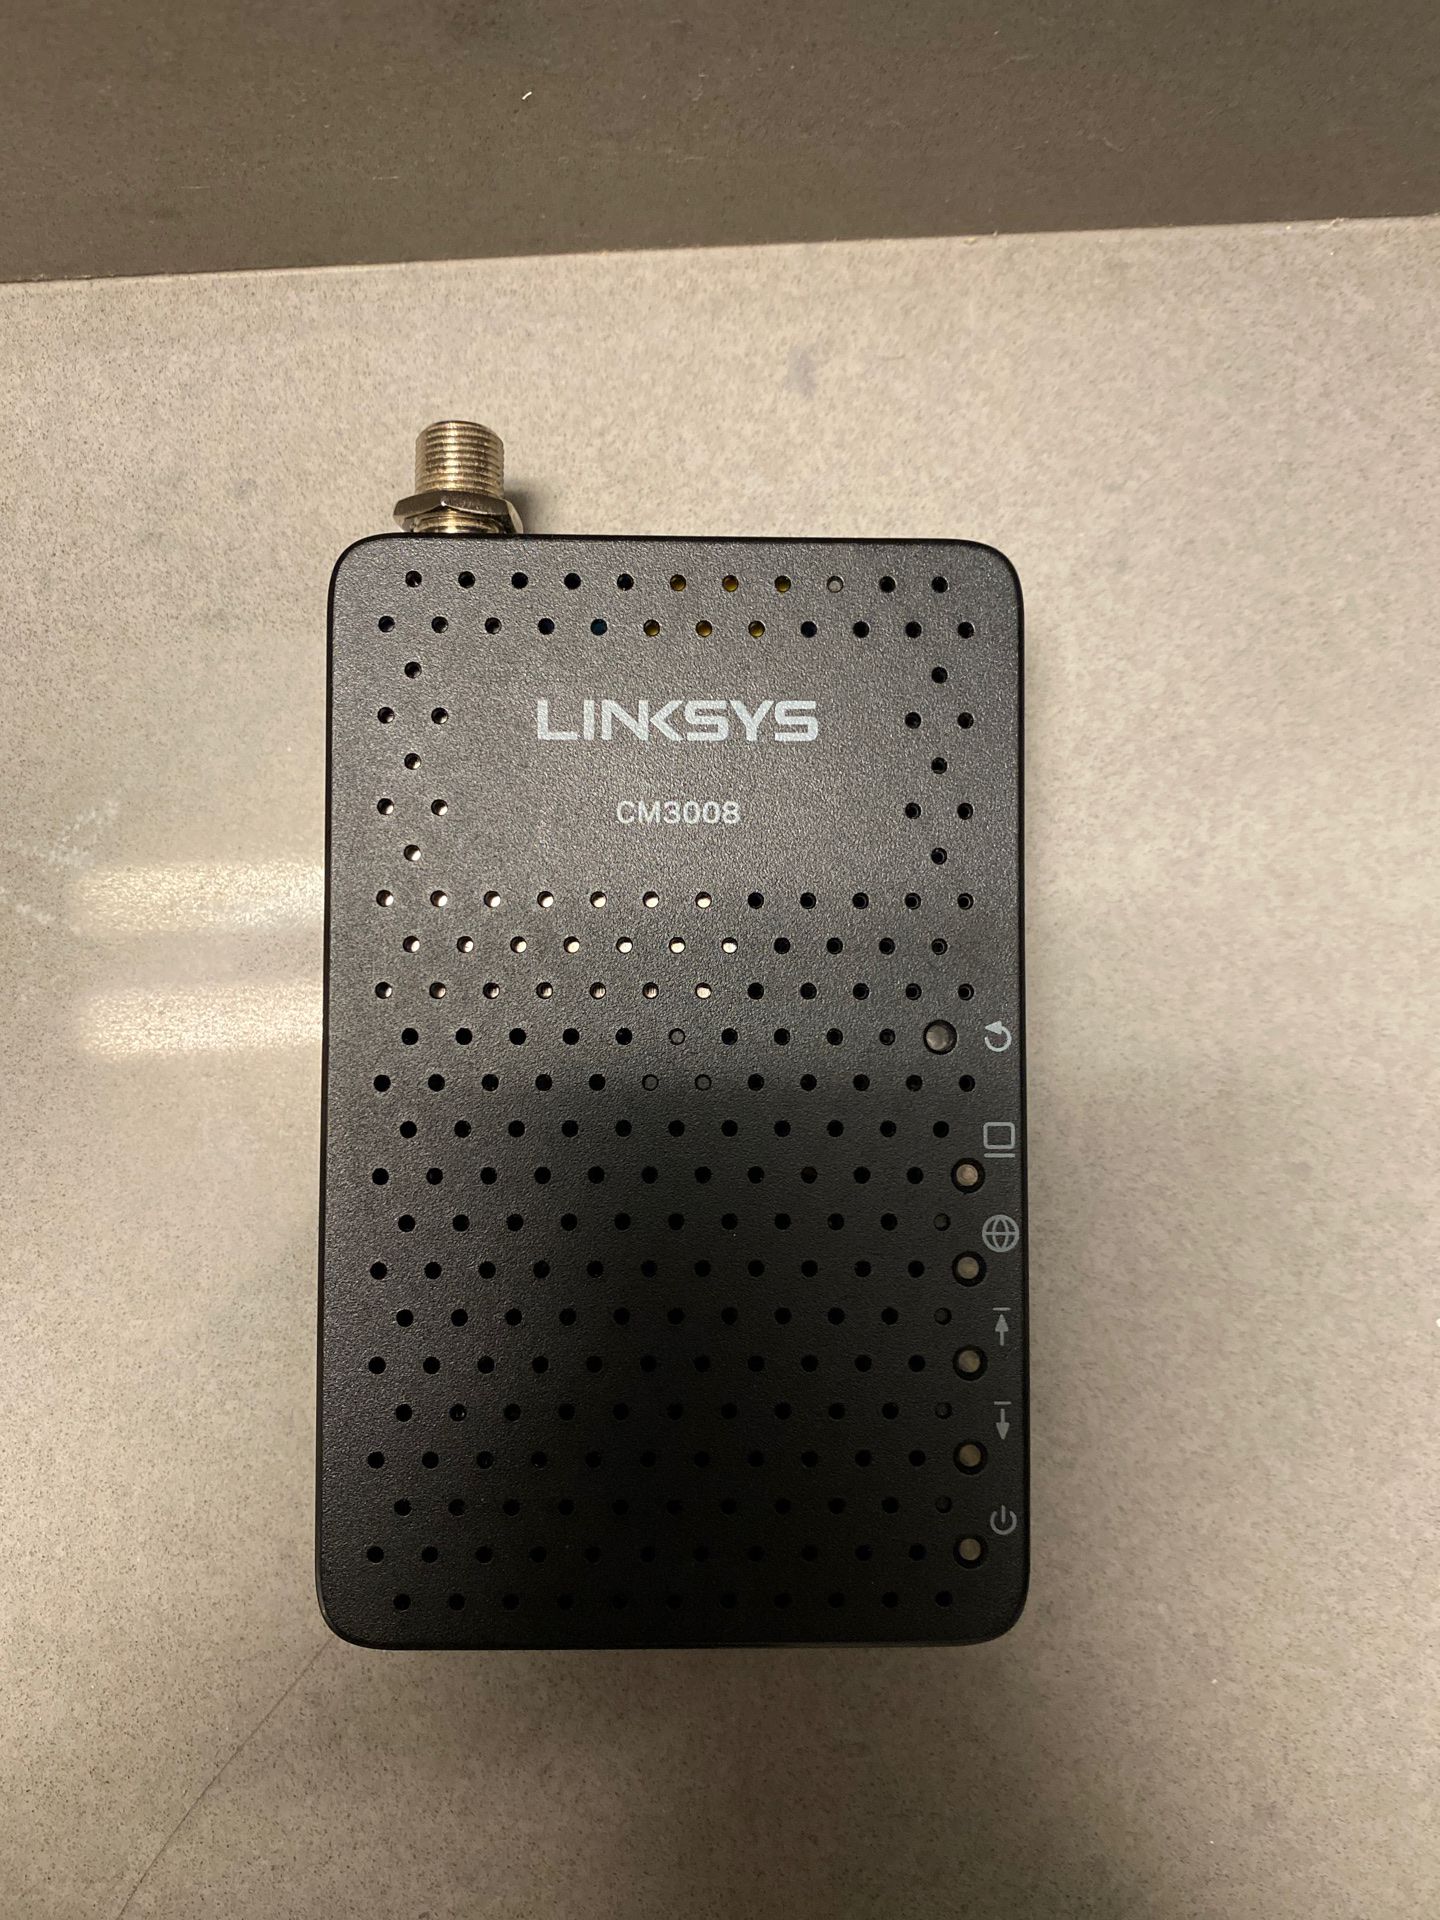 LINKSYS CM3008